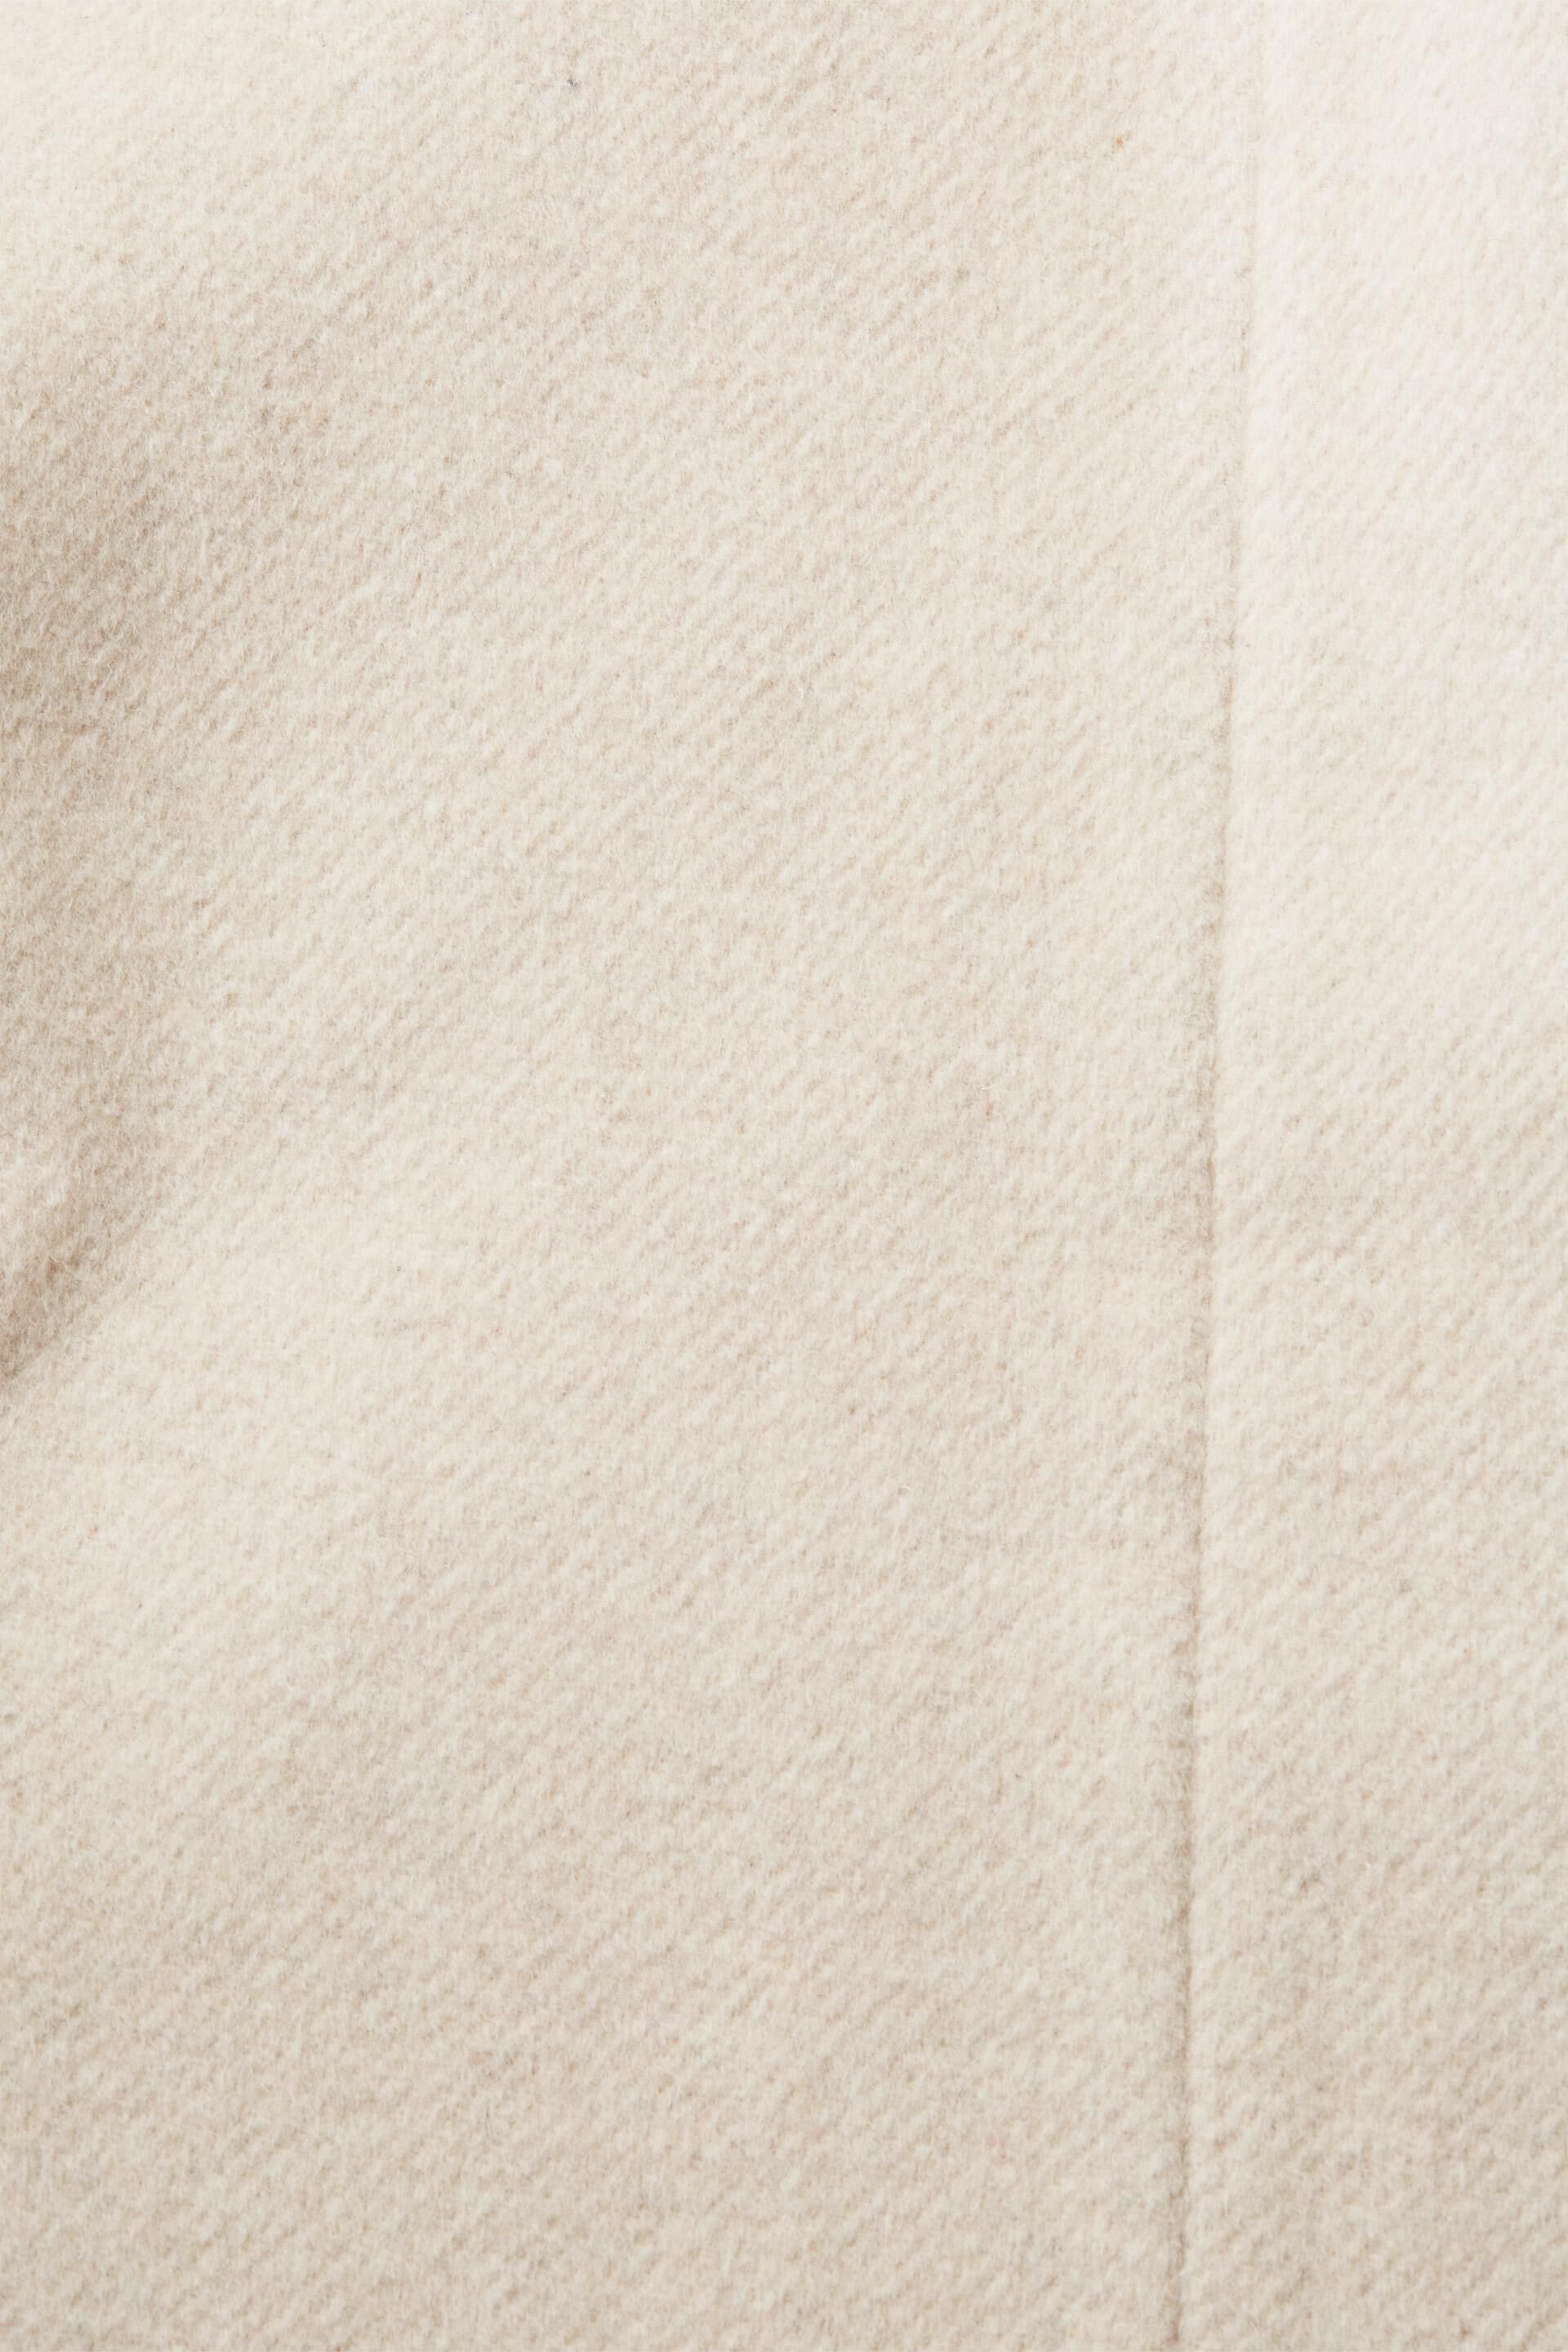 Esprit Wollmischung Gürtel und Mantel mit aus Kapuze Recycelt: